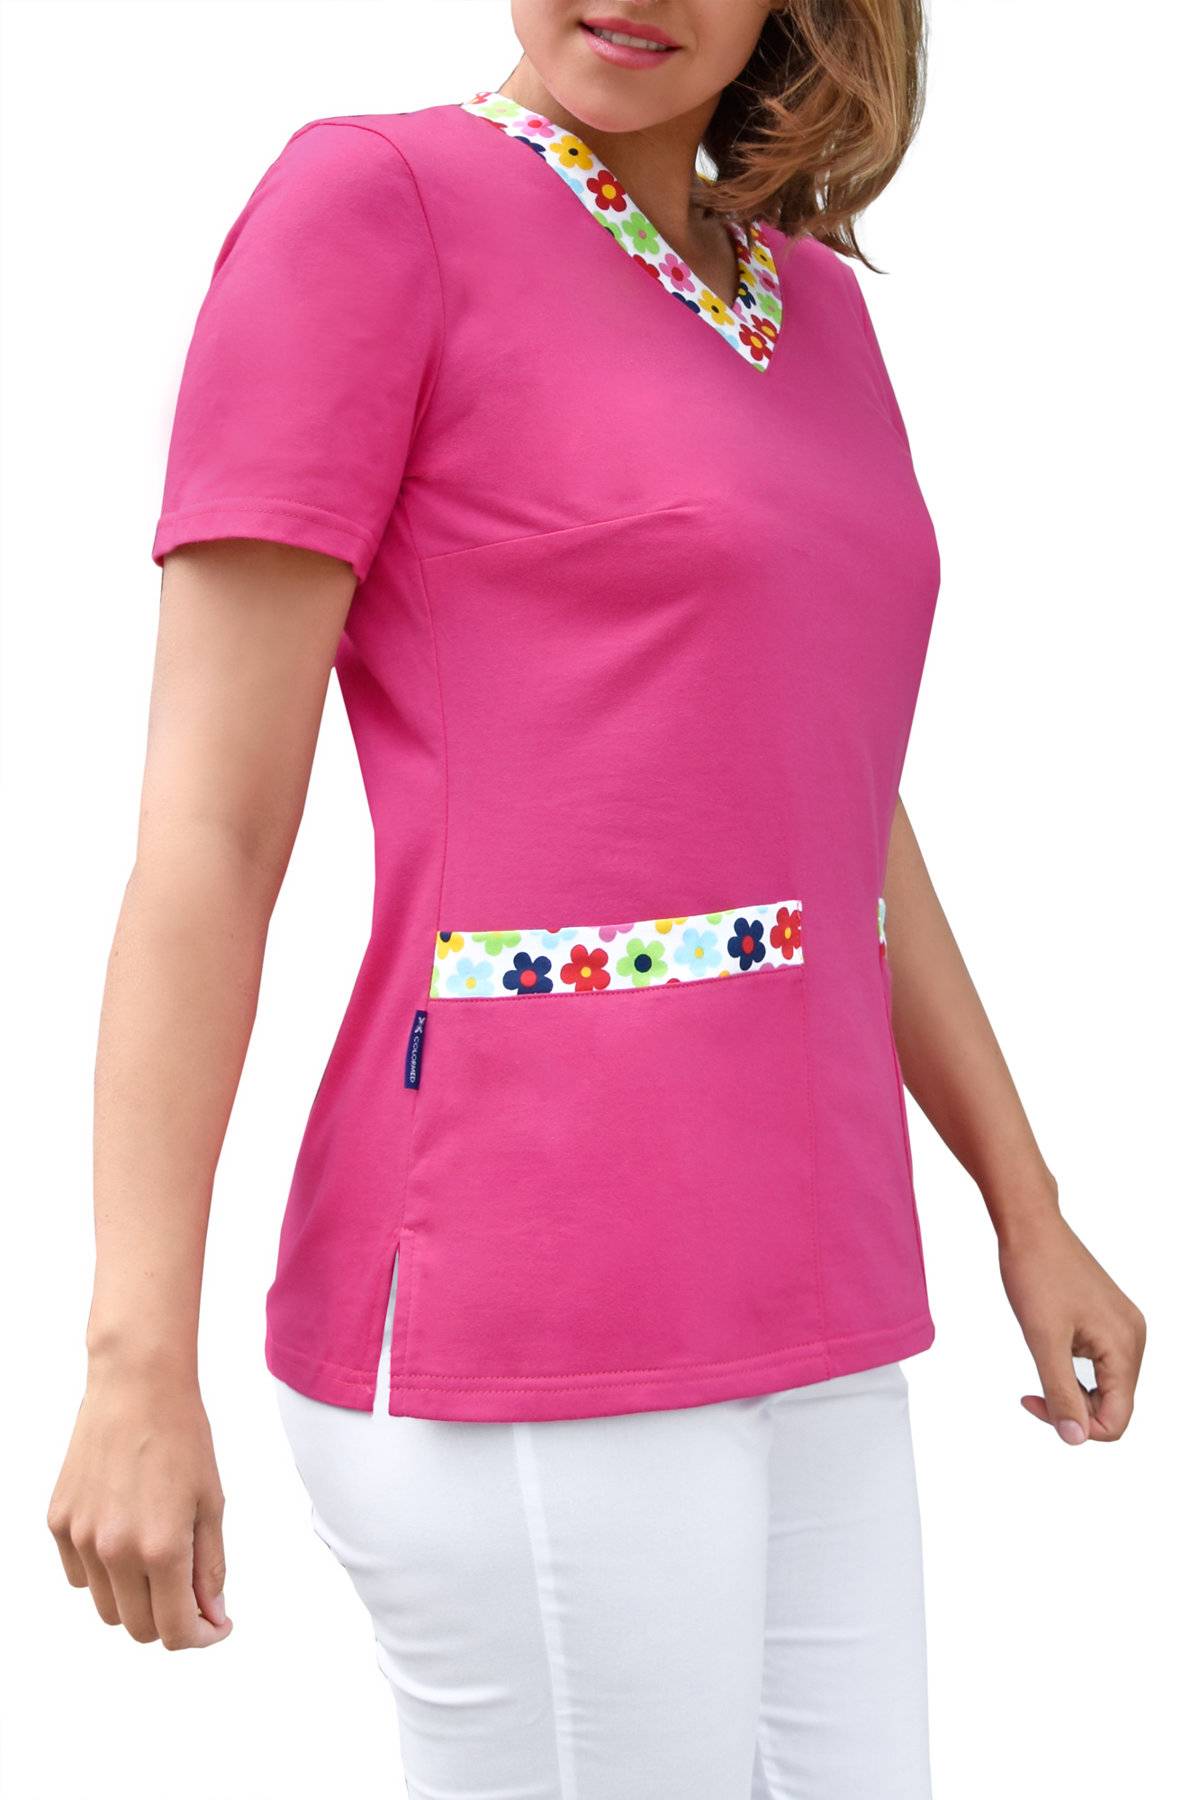 Bluza medyczna damska, bawełna 100% - kwieciste dodatki (BD4) 6 kolorów